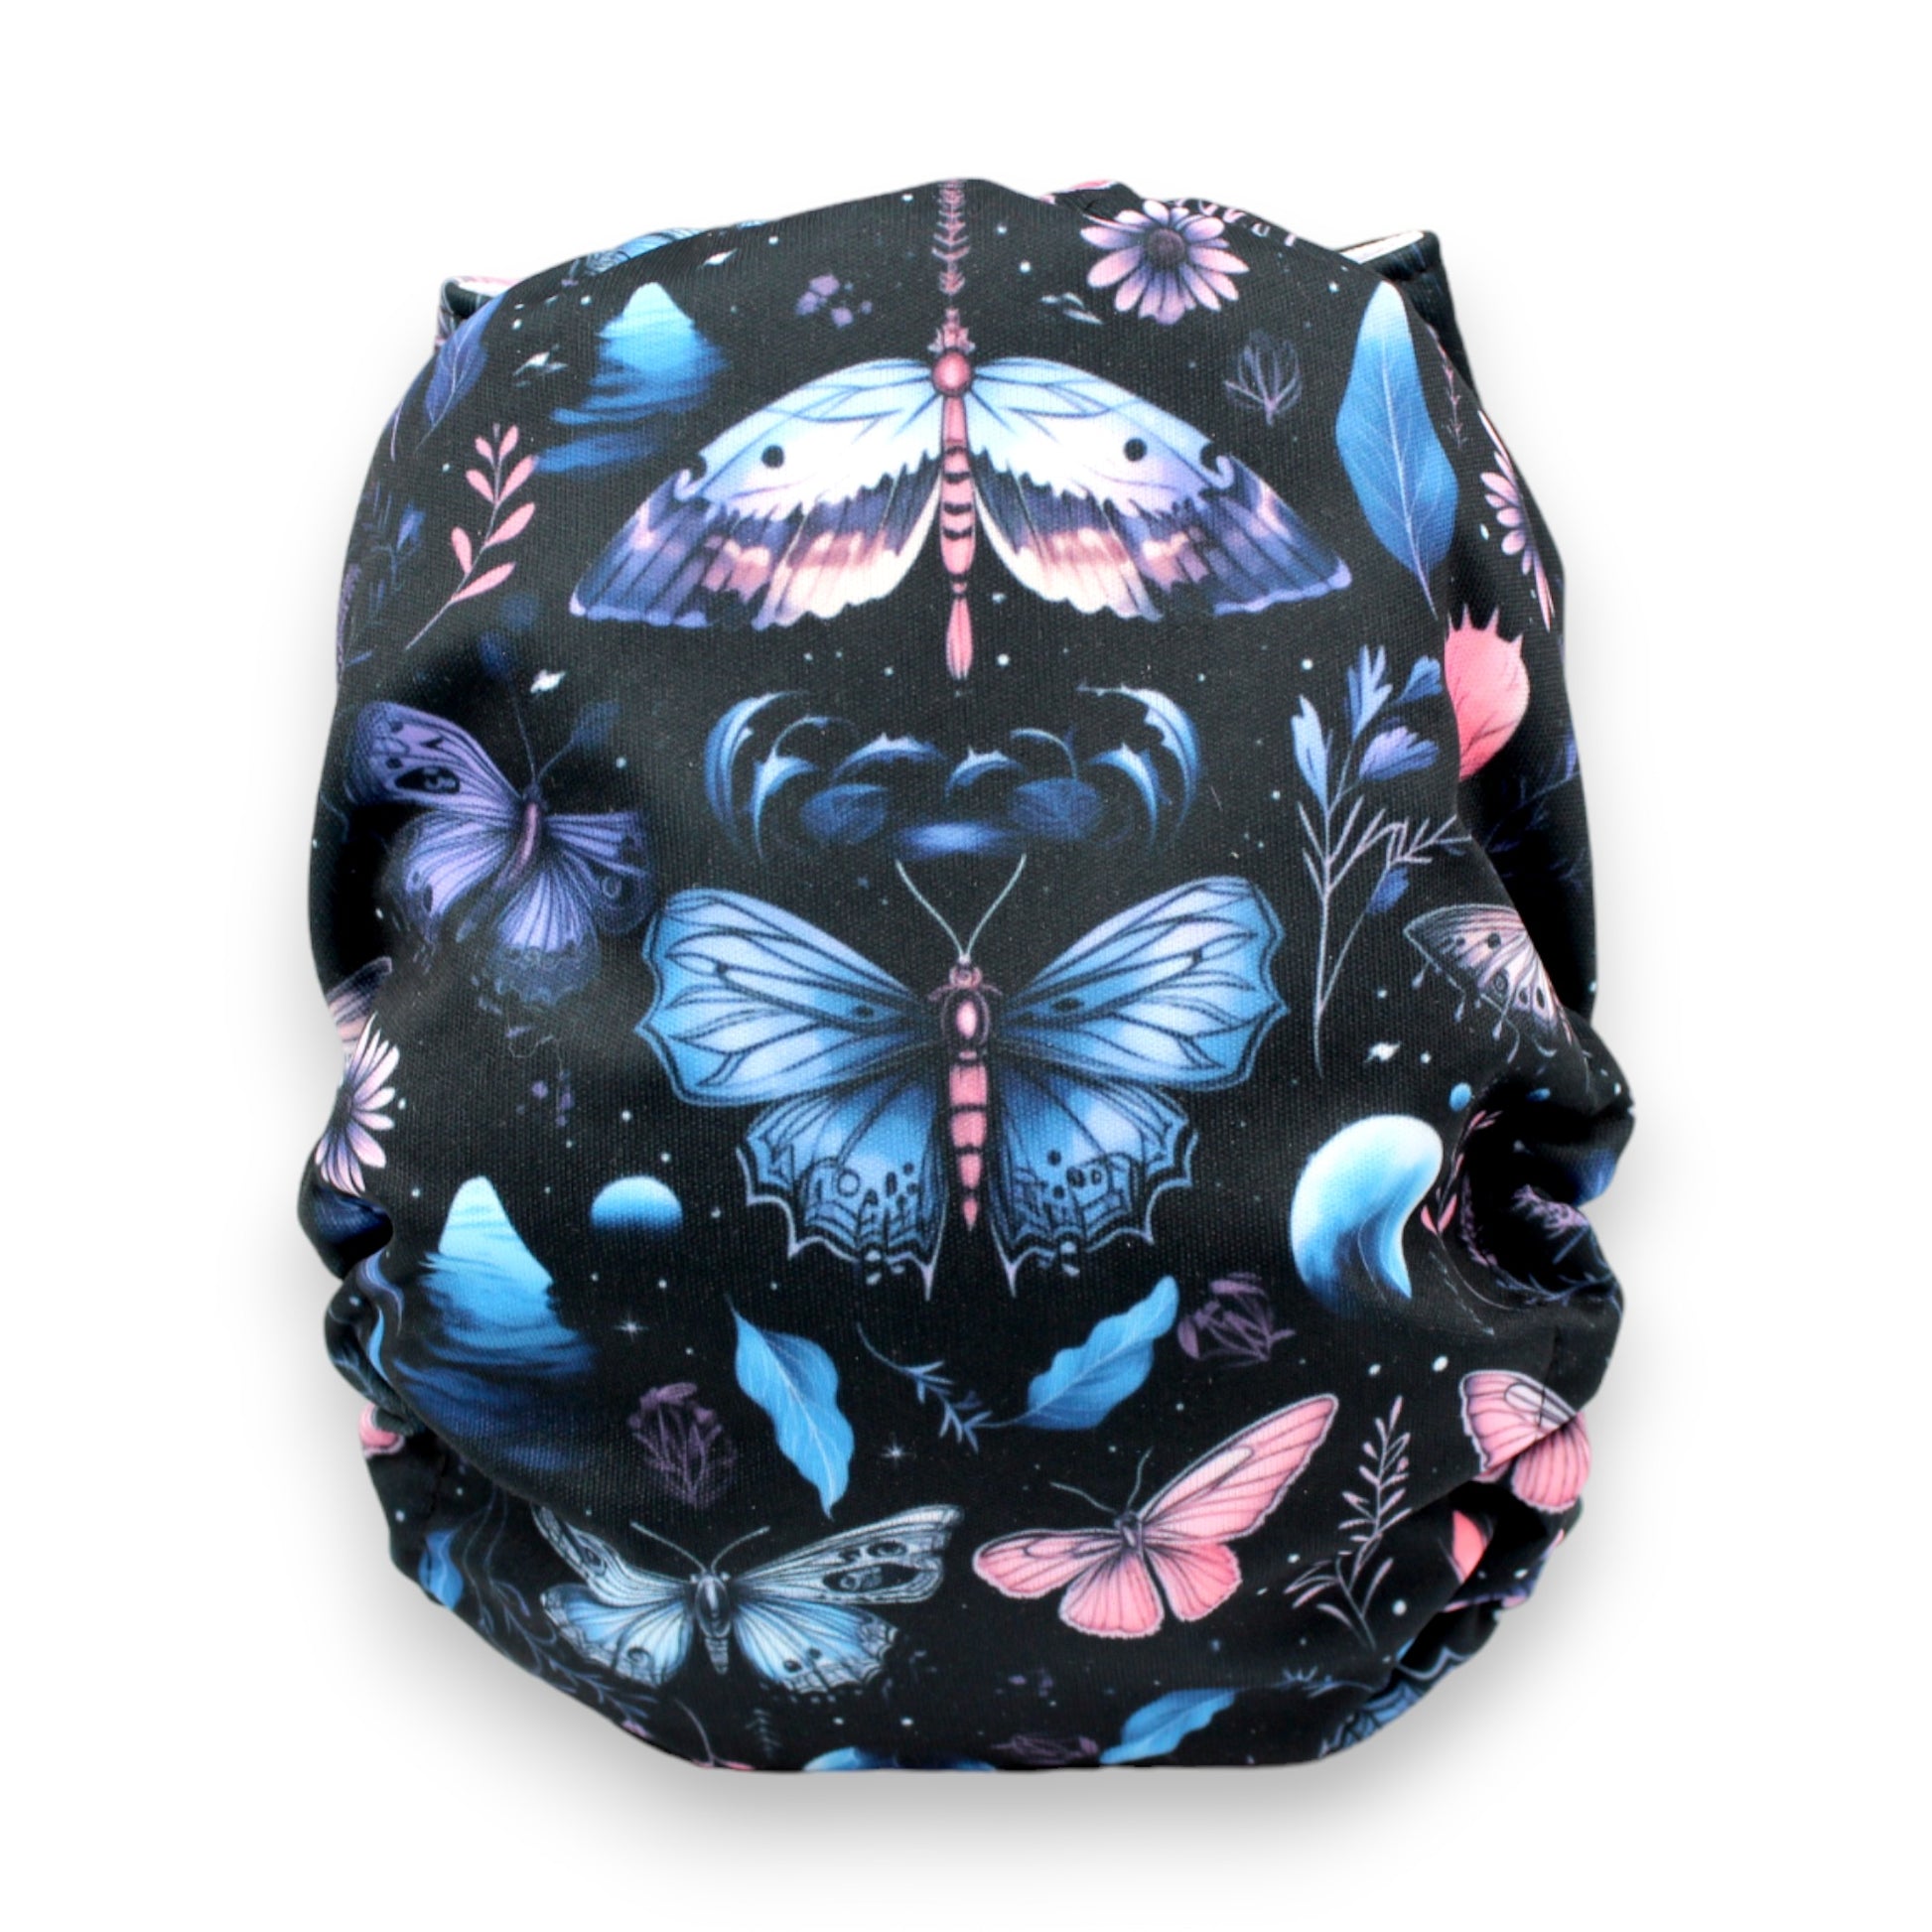 Couches - Papillons nocturnes FP (7352695718025)